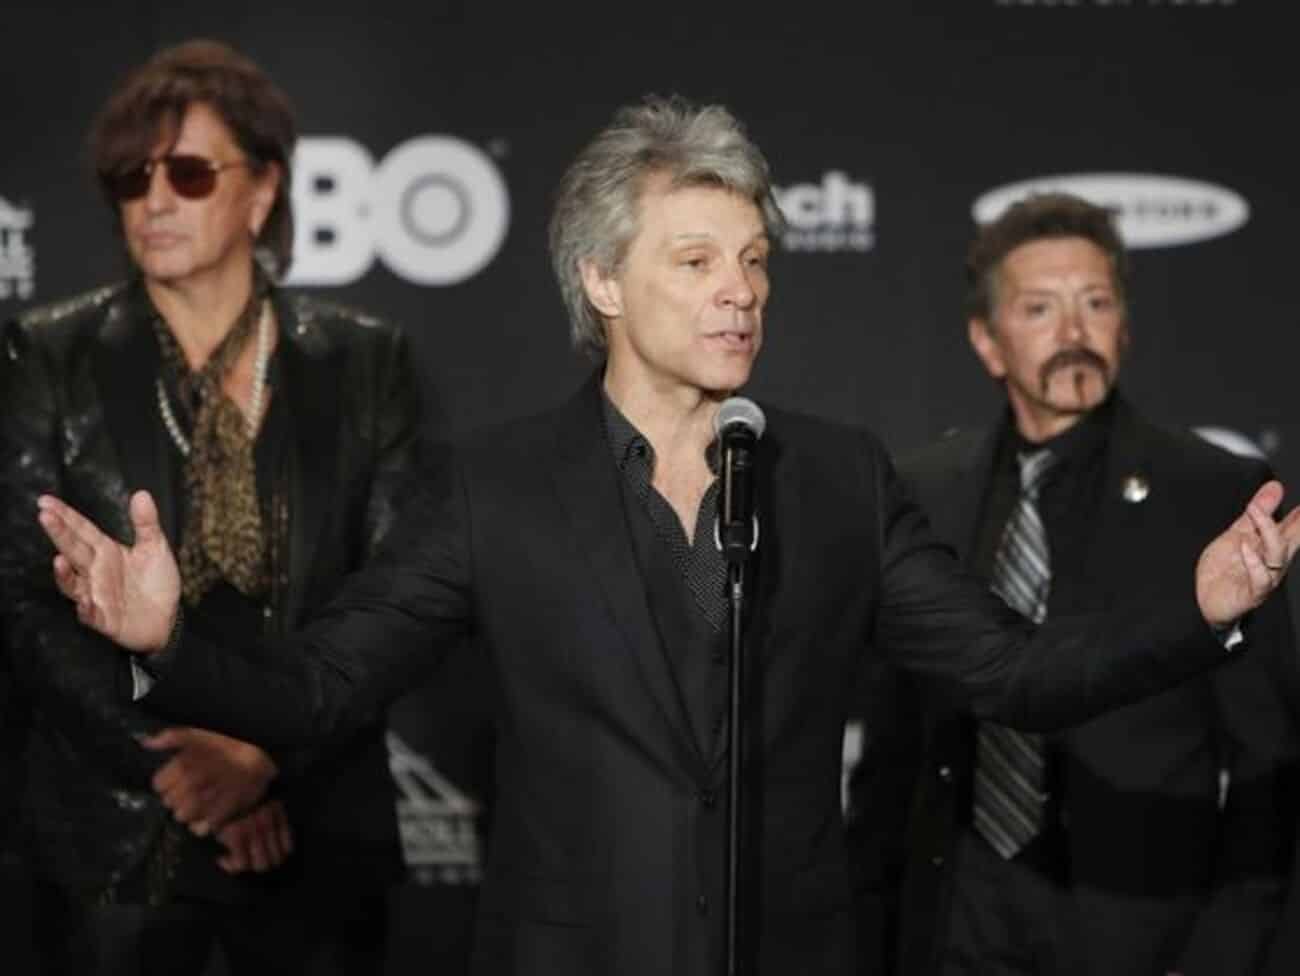 Alec John Such, a la derecha de Jon Bon Jovi y Richie Sambora (izquierda), en 2018